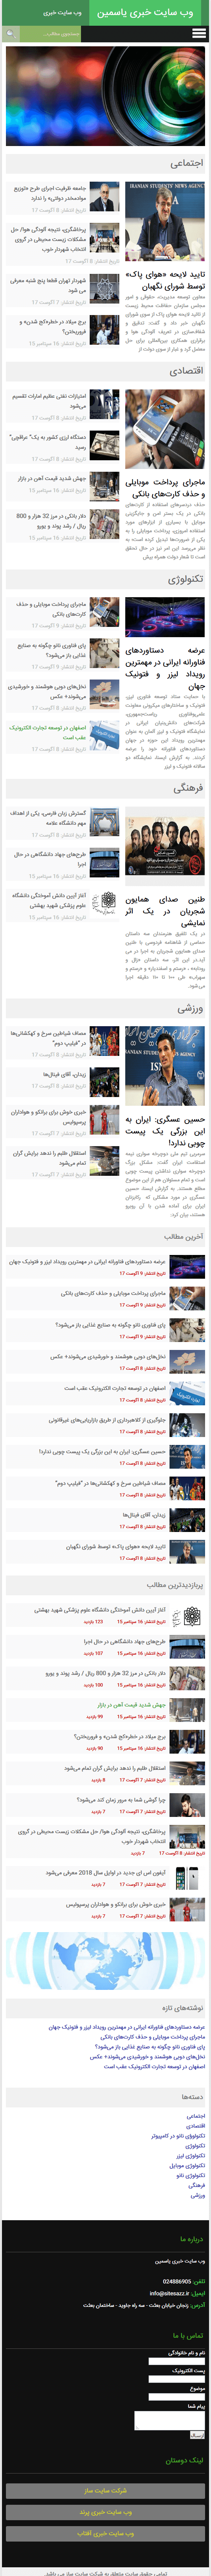 سایت خبری یاسمین در حالت تبلت